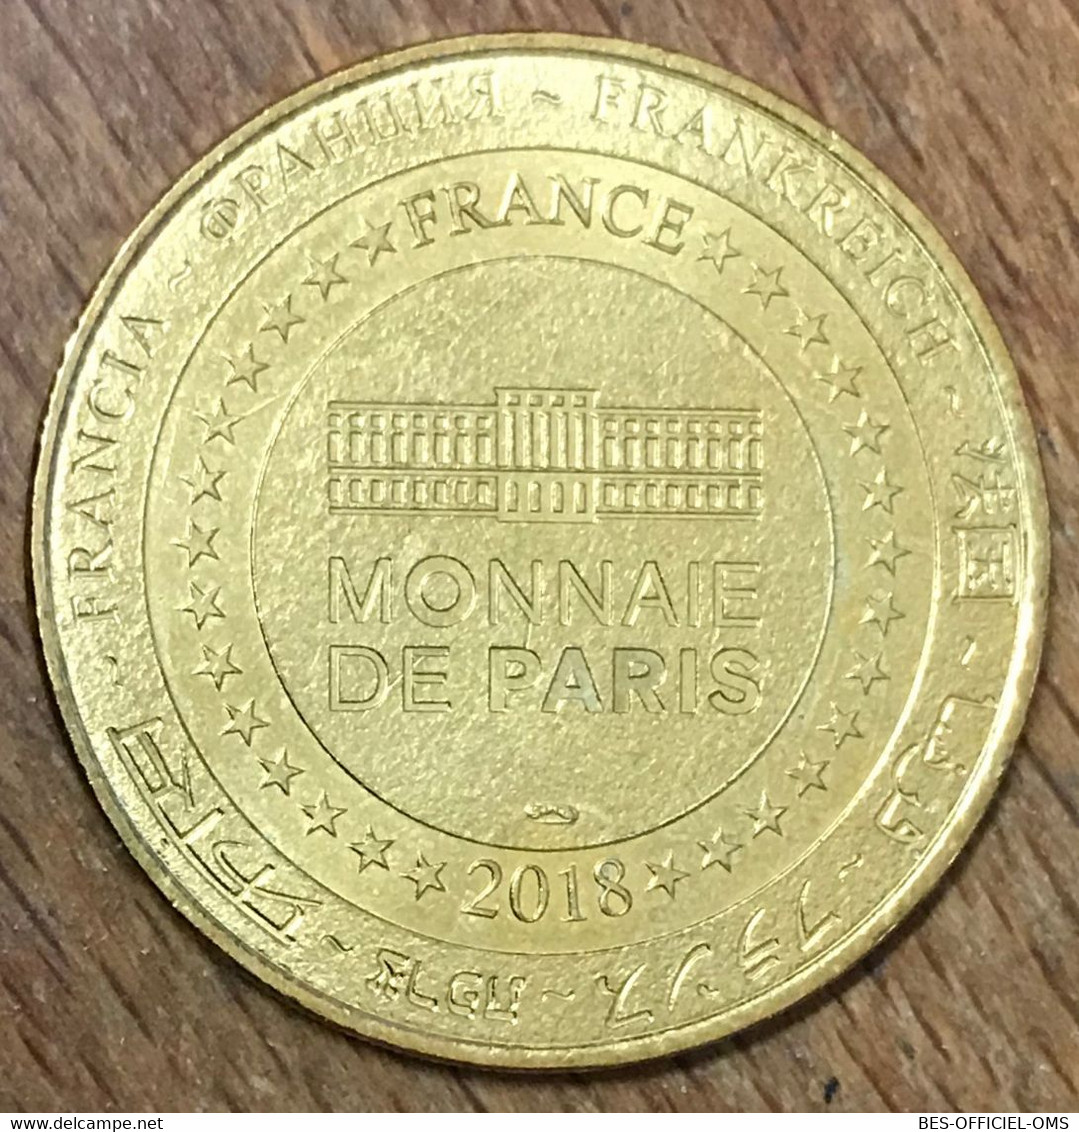 85 PUY DU FOU OISEAUX FANTÔMES MDP 2018 MÉDAILLE MONNAIE DE PARIS JETON TOURISTIQUE MEDALS COINS TOKENS - 2018